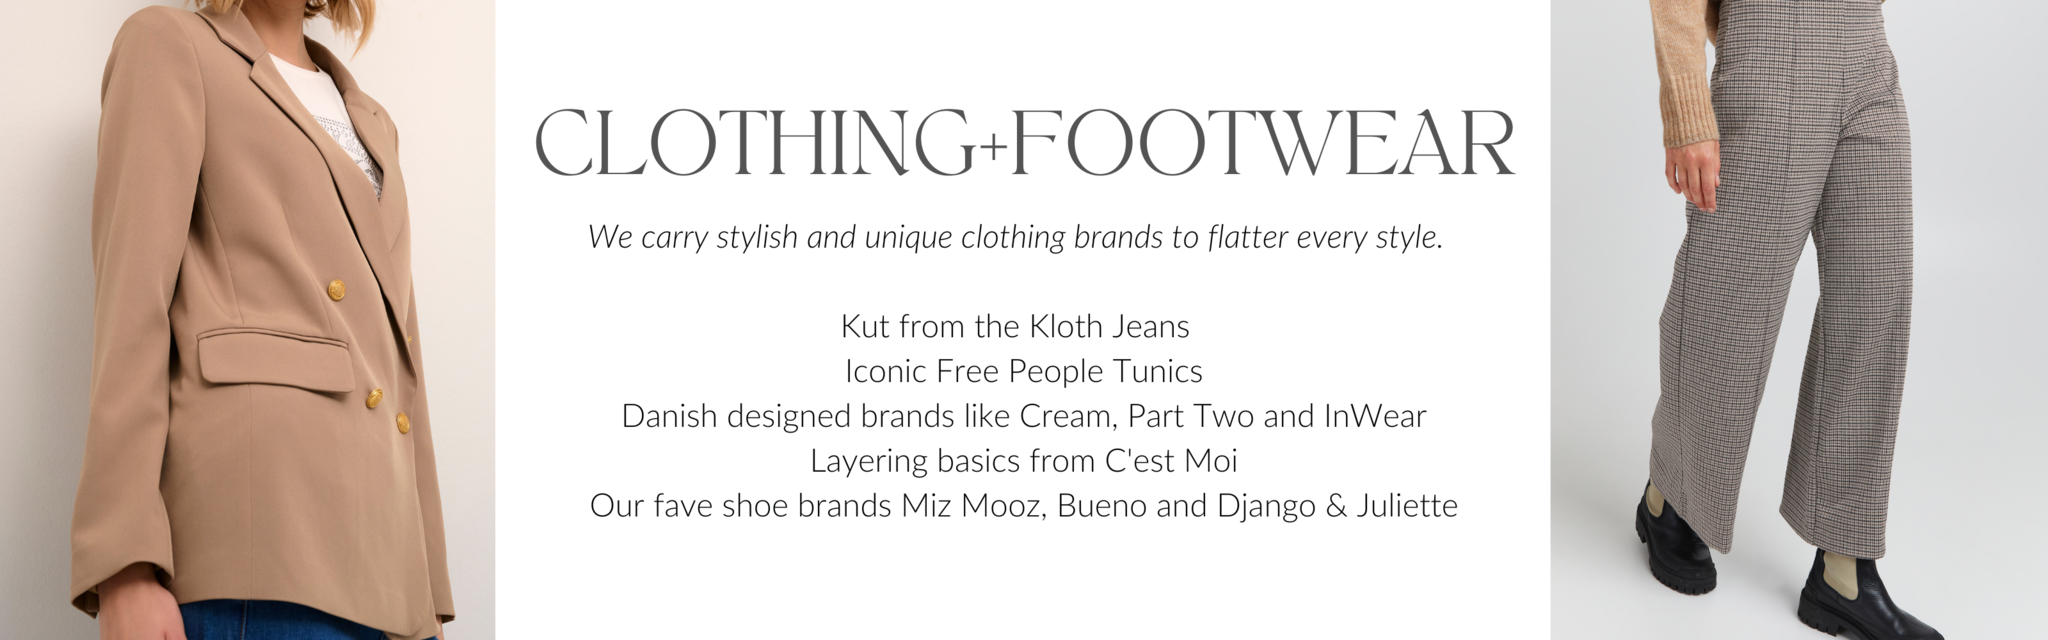 Womens Clothes, Fashion & Footwear